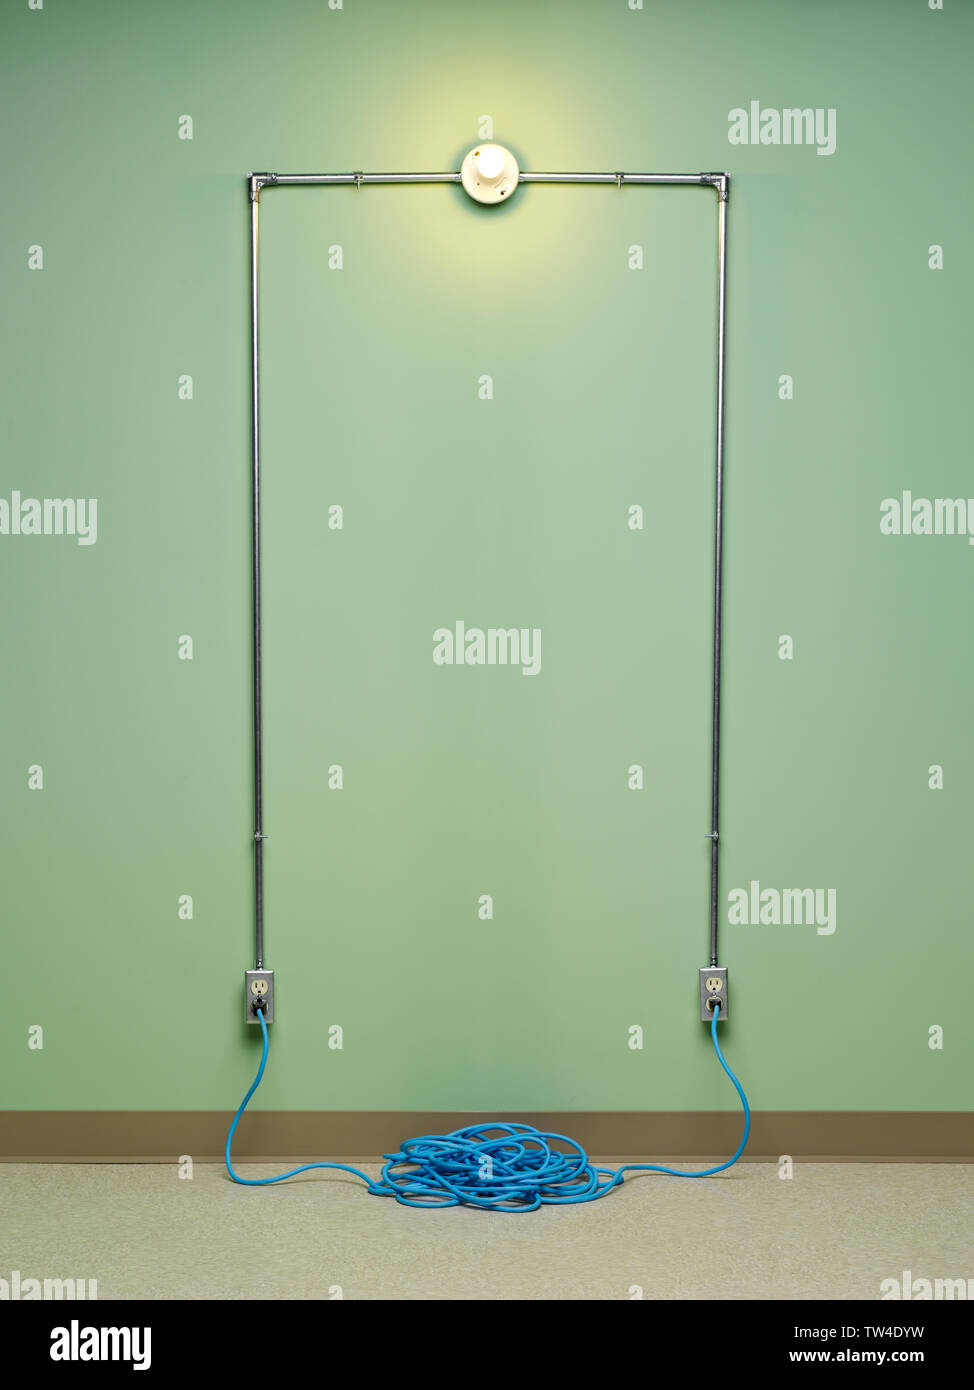 Inkompetent und gefährliche elektrische Schaltung mit blau Spiralkabel Verlängerungskabel angeschlossenen in zwei AC-Steckdosen mit Glühlampen Licht auf grüne Wand Stockfoto